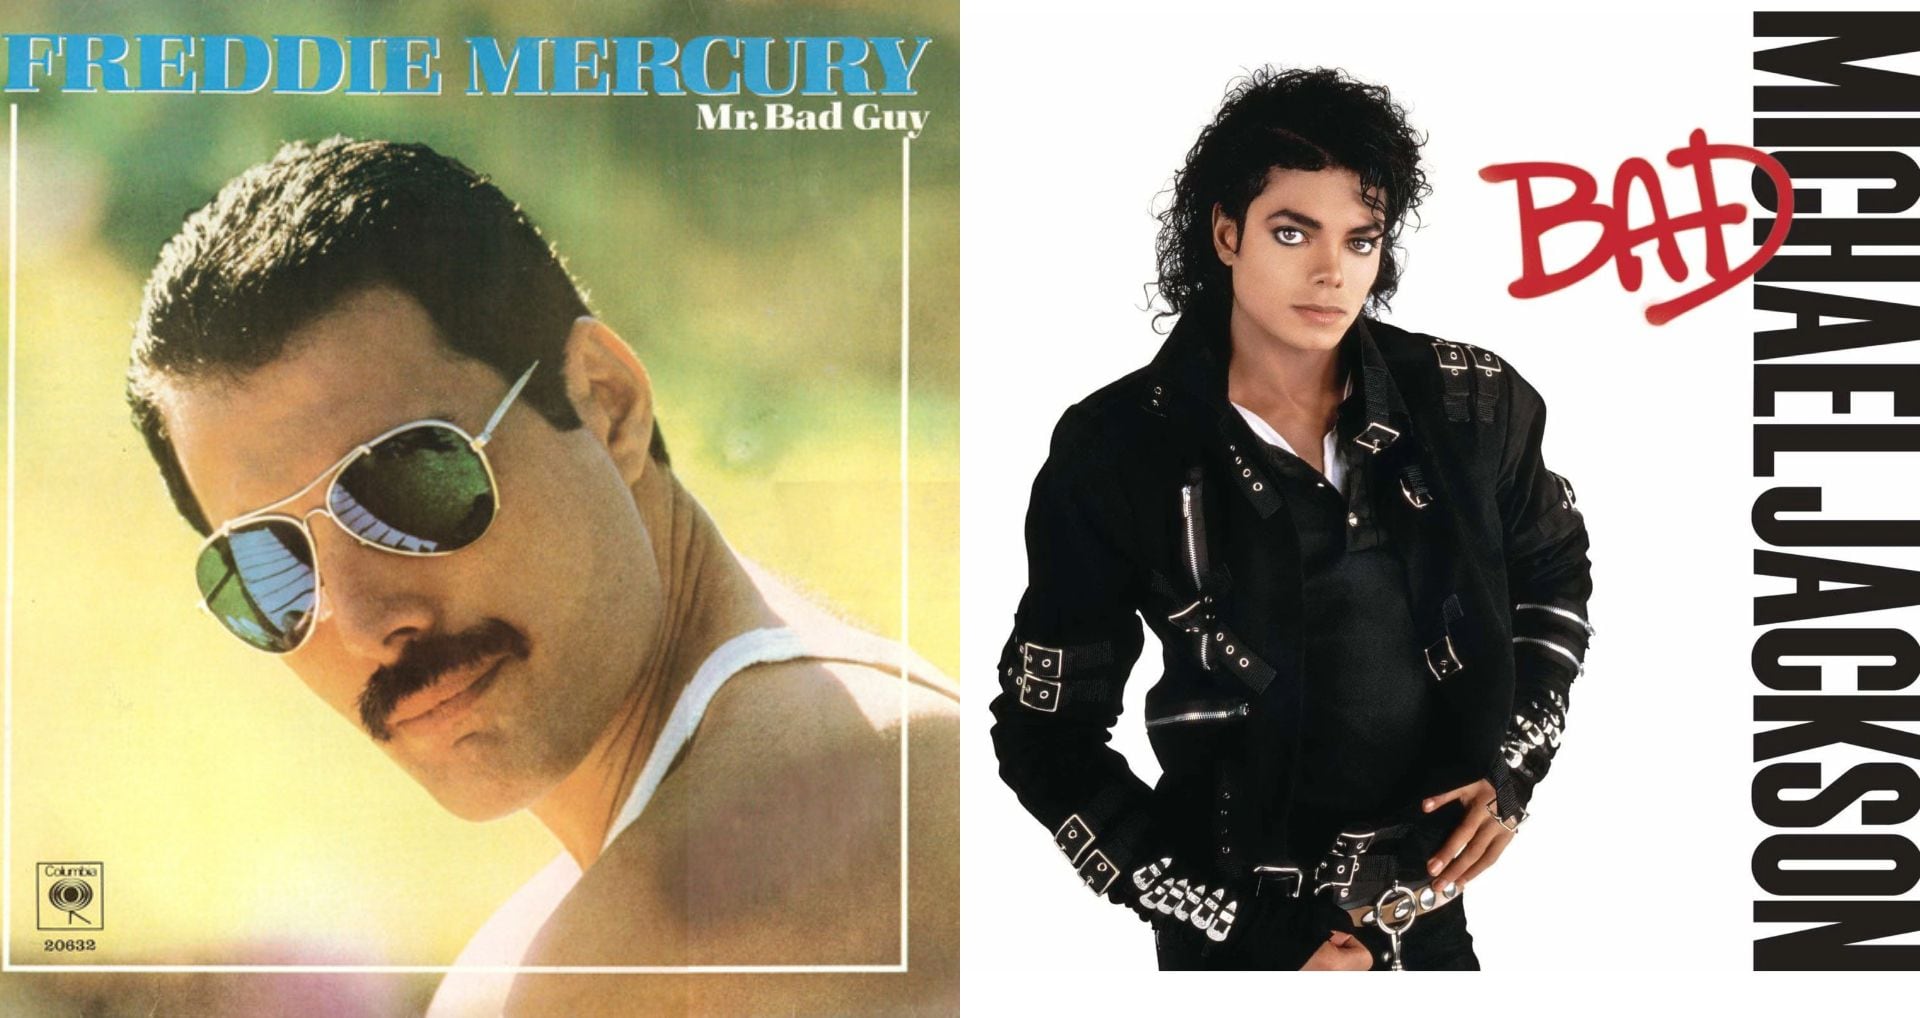 Tras su su intento de colaborar, Michael Jackson y Freddie Mercury nombraron a sus álbumes "Mr. Bad Guy" y "Bad", una aparente referencia a cómo se apodaron durante su reunión